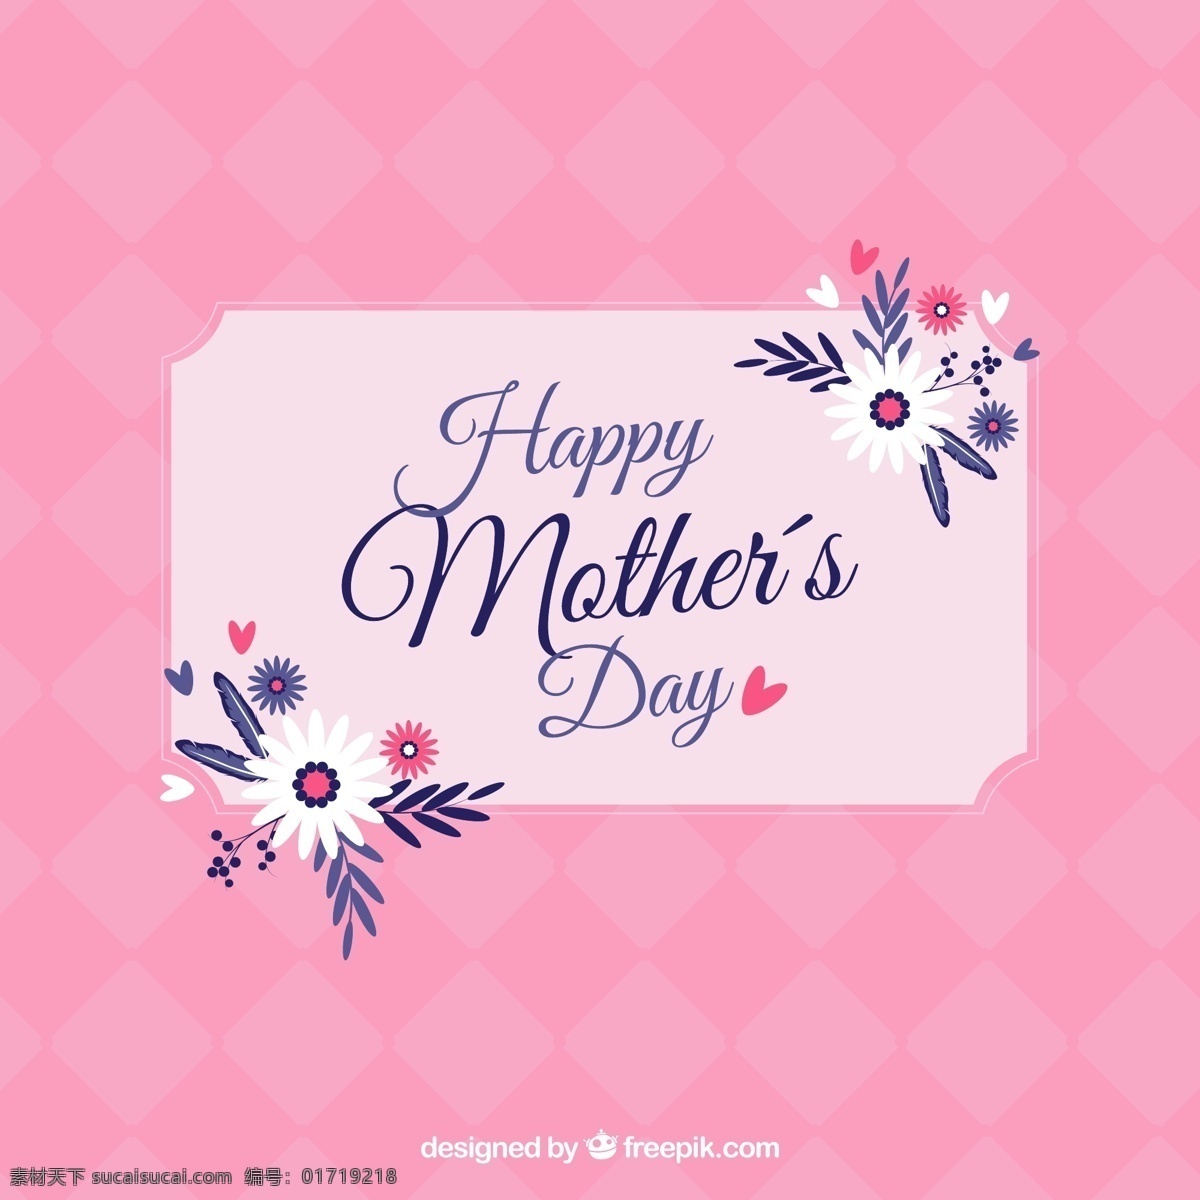 粉红色 卡片 母亲节 花卉 鲜花 母亲 粉红 妈妈 贺卡 图标 高清 源文件